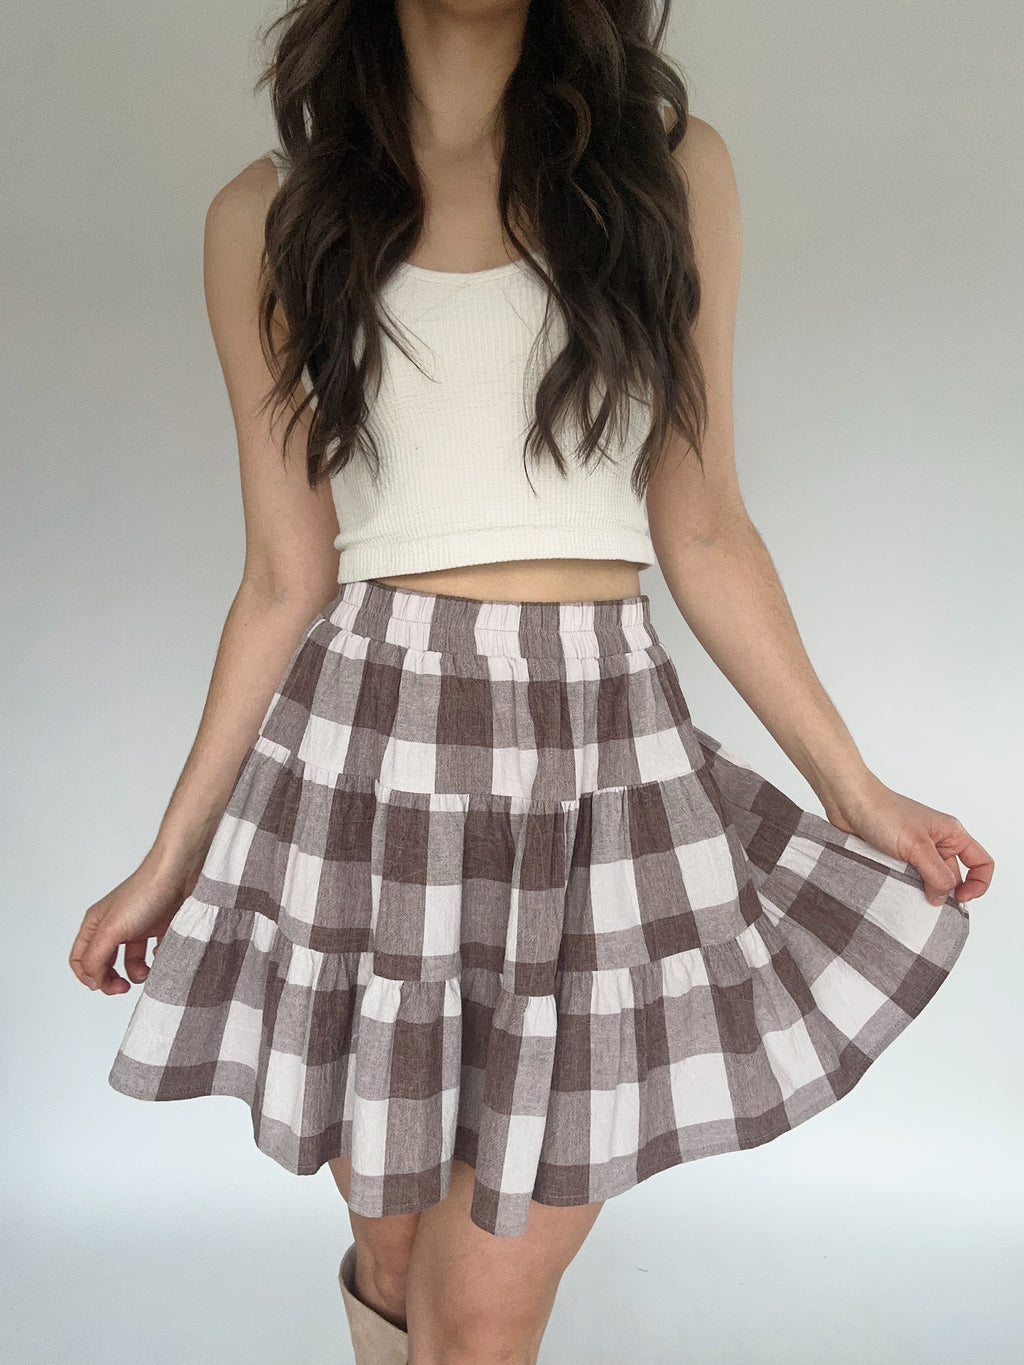 Simple Things Gingham Skirt